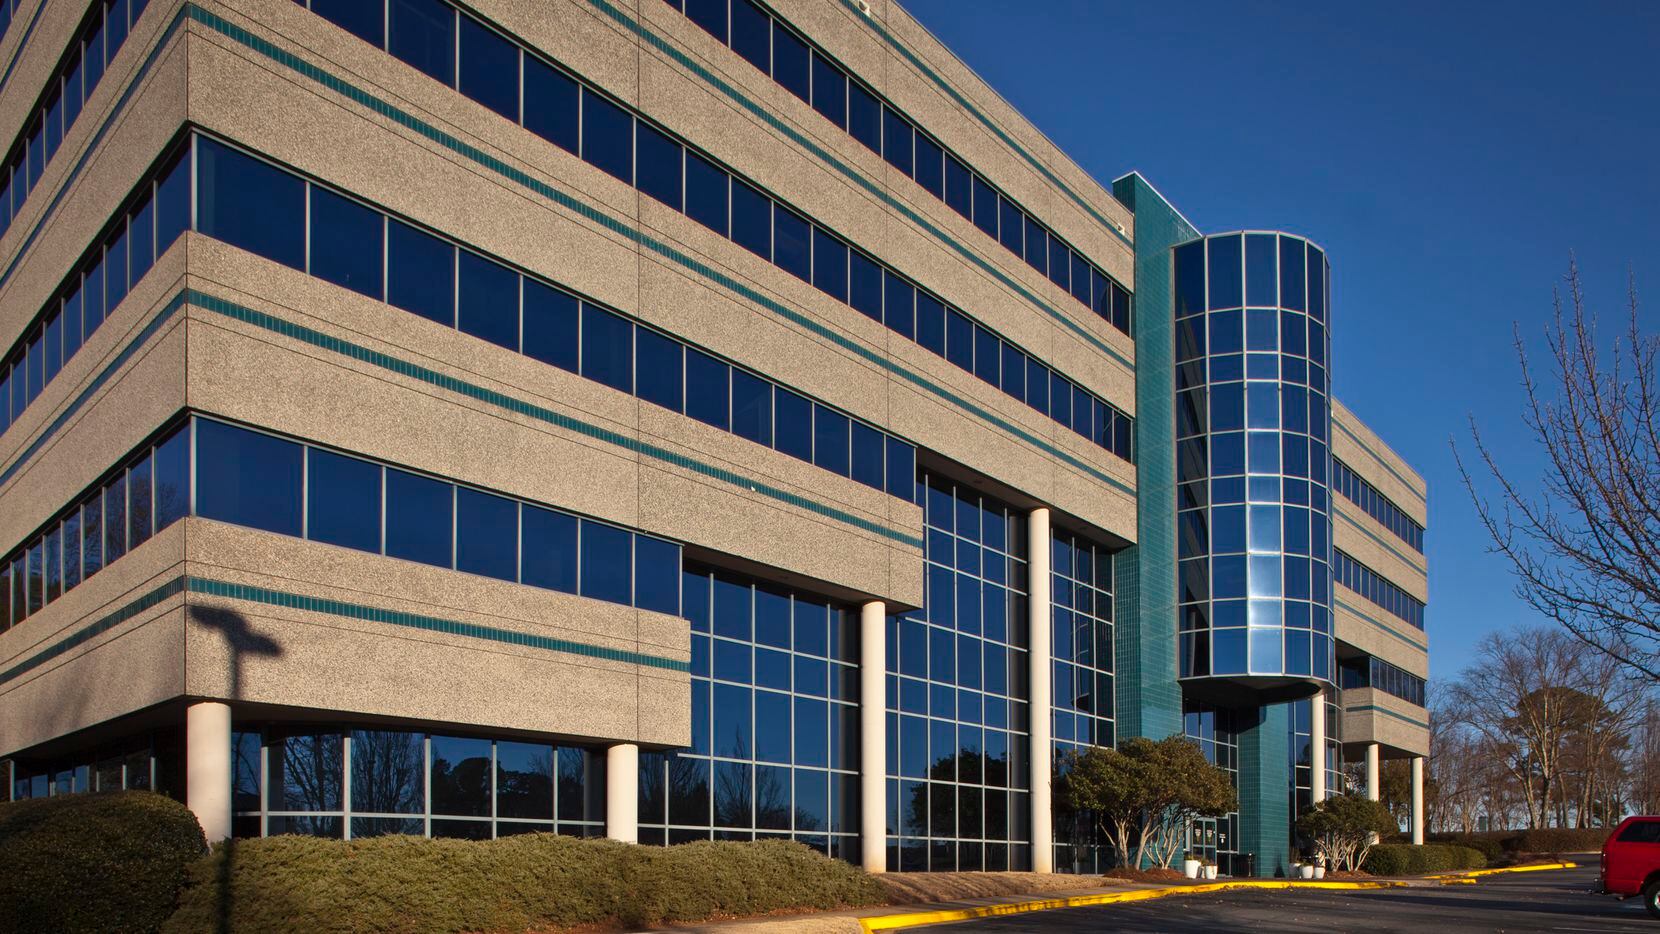 Alabama health care real estate developer to open new Dallas office